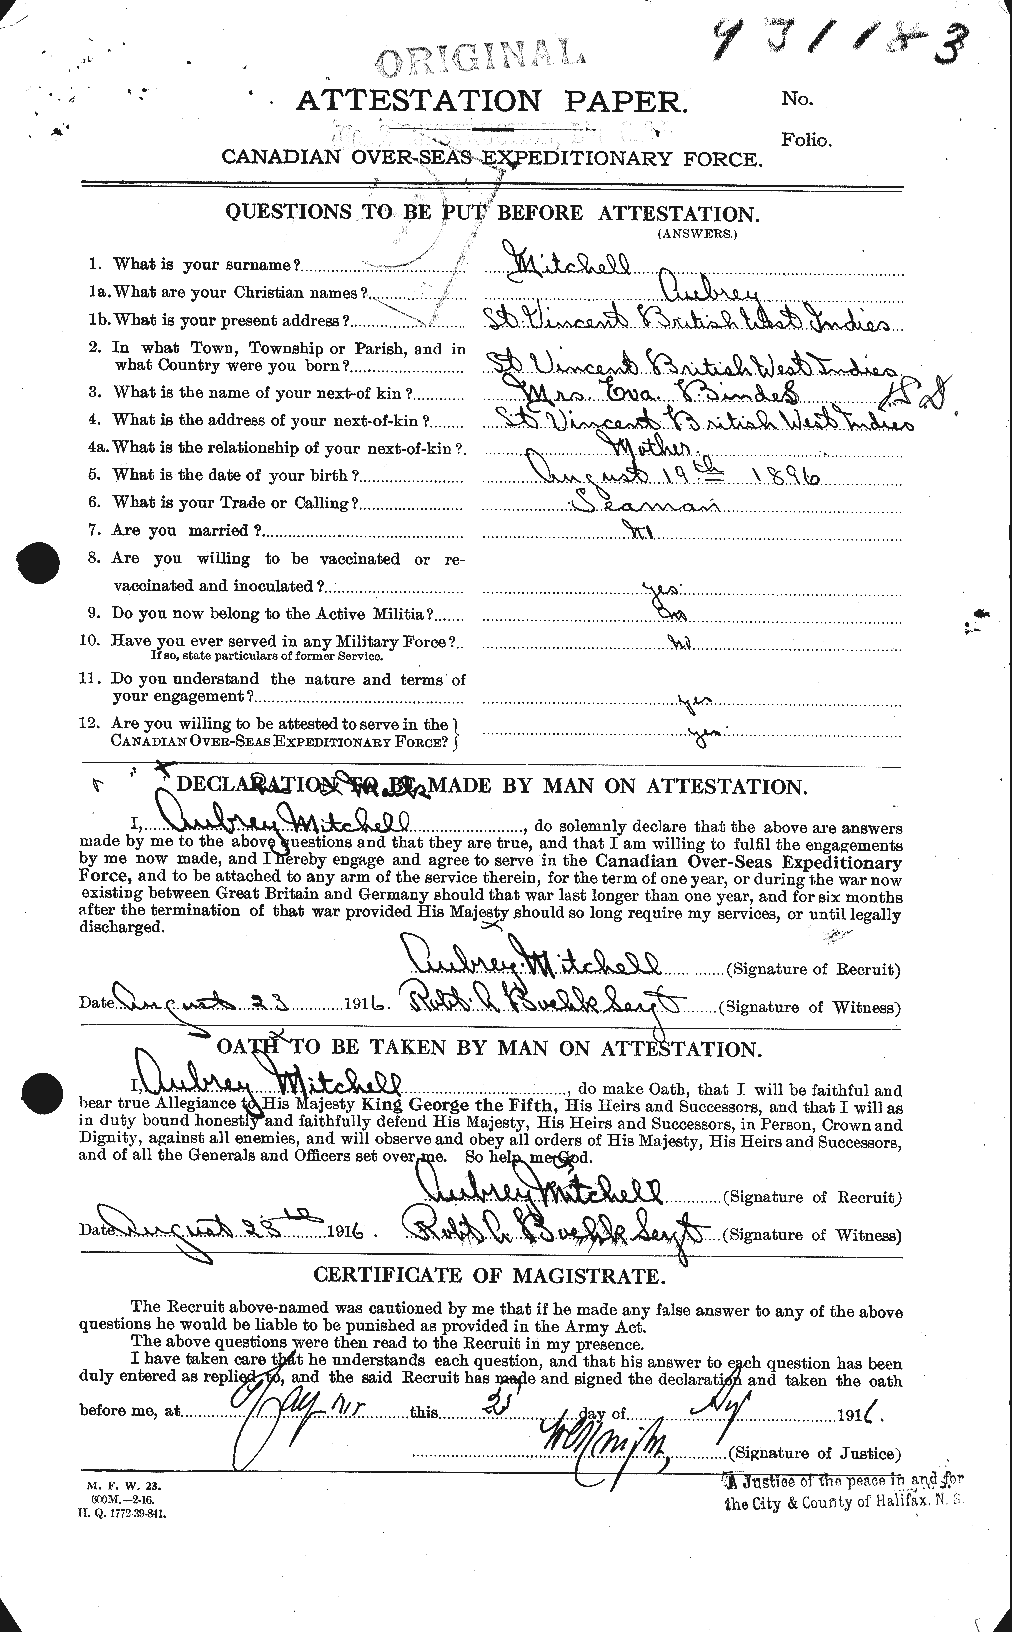 Dossiers du Personnel de la Première Guerre mondiale - CEC 496077a